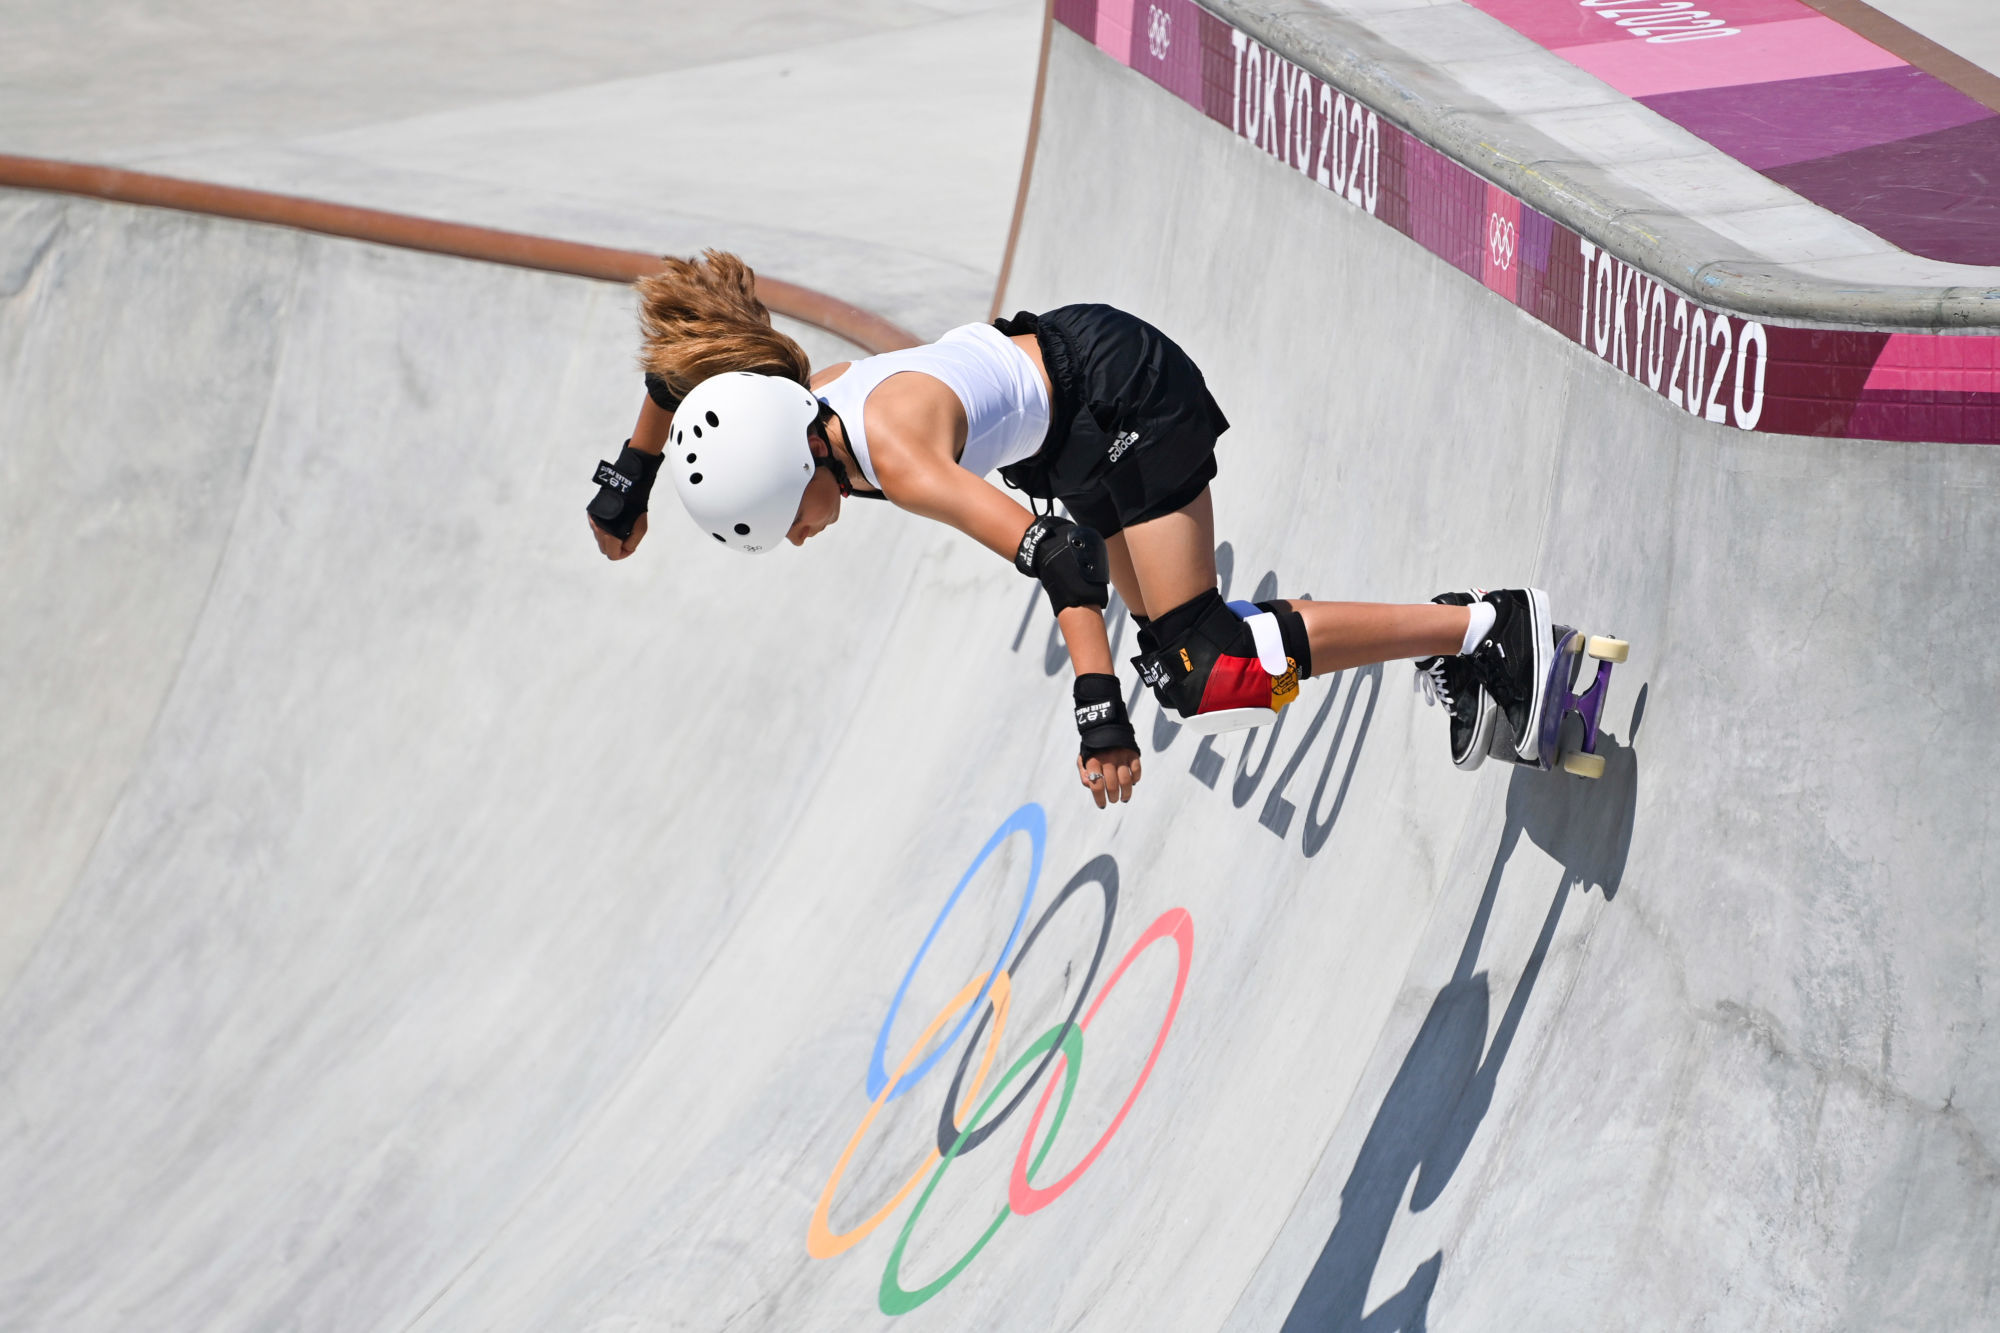 Skateboard : Histoire olympique, règles, dernières actualités et